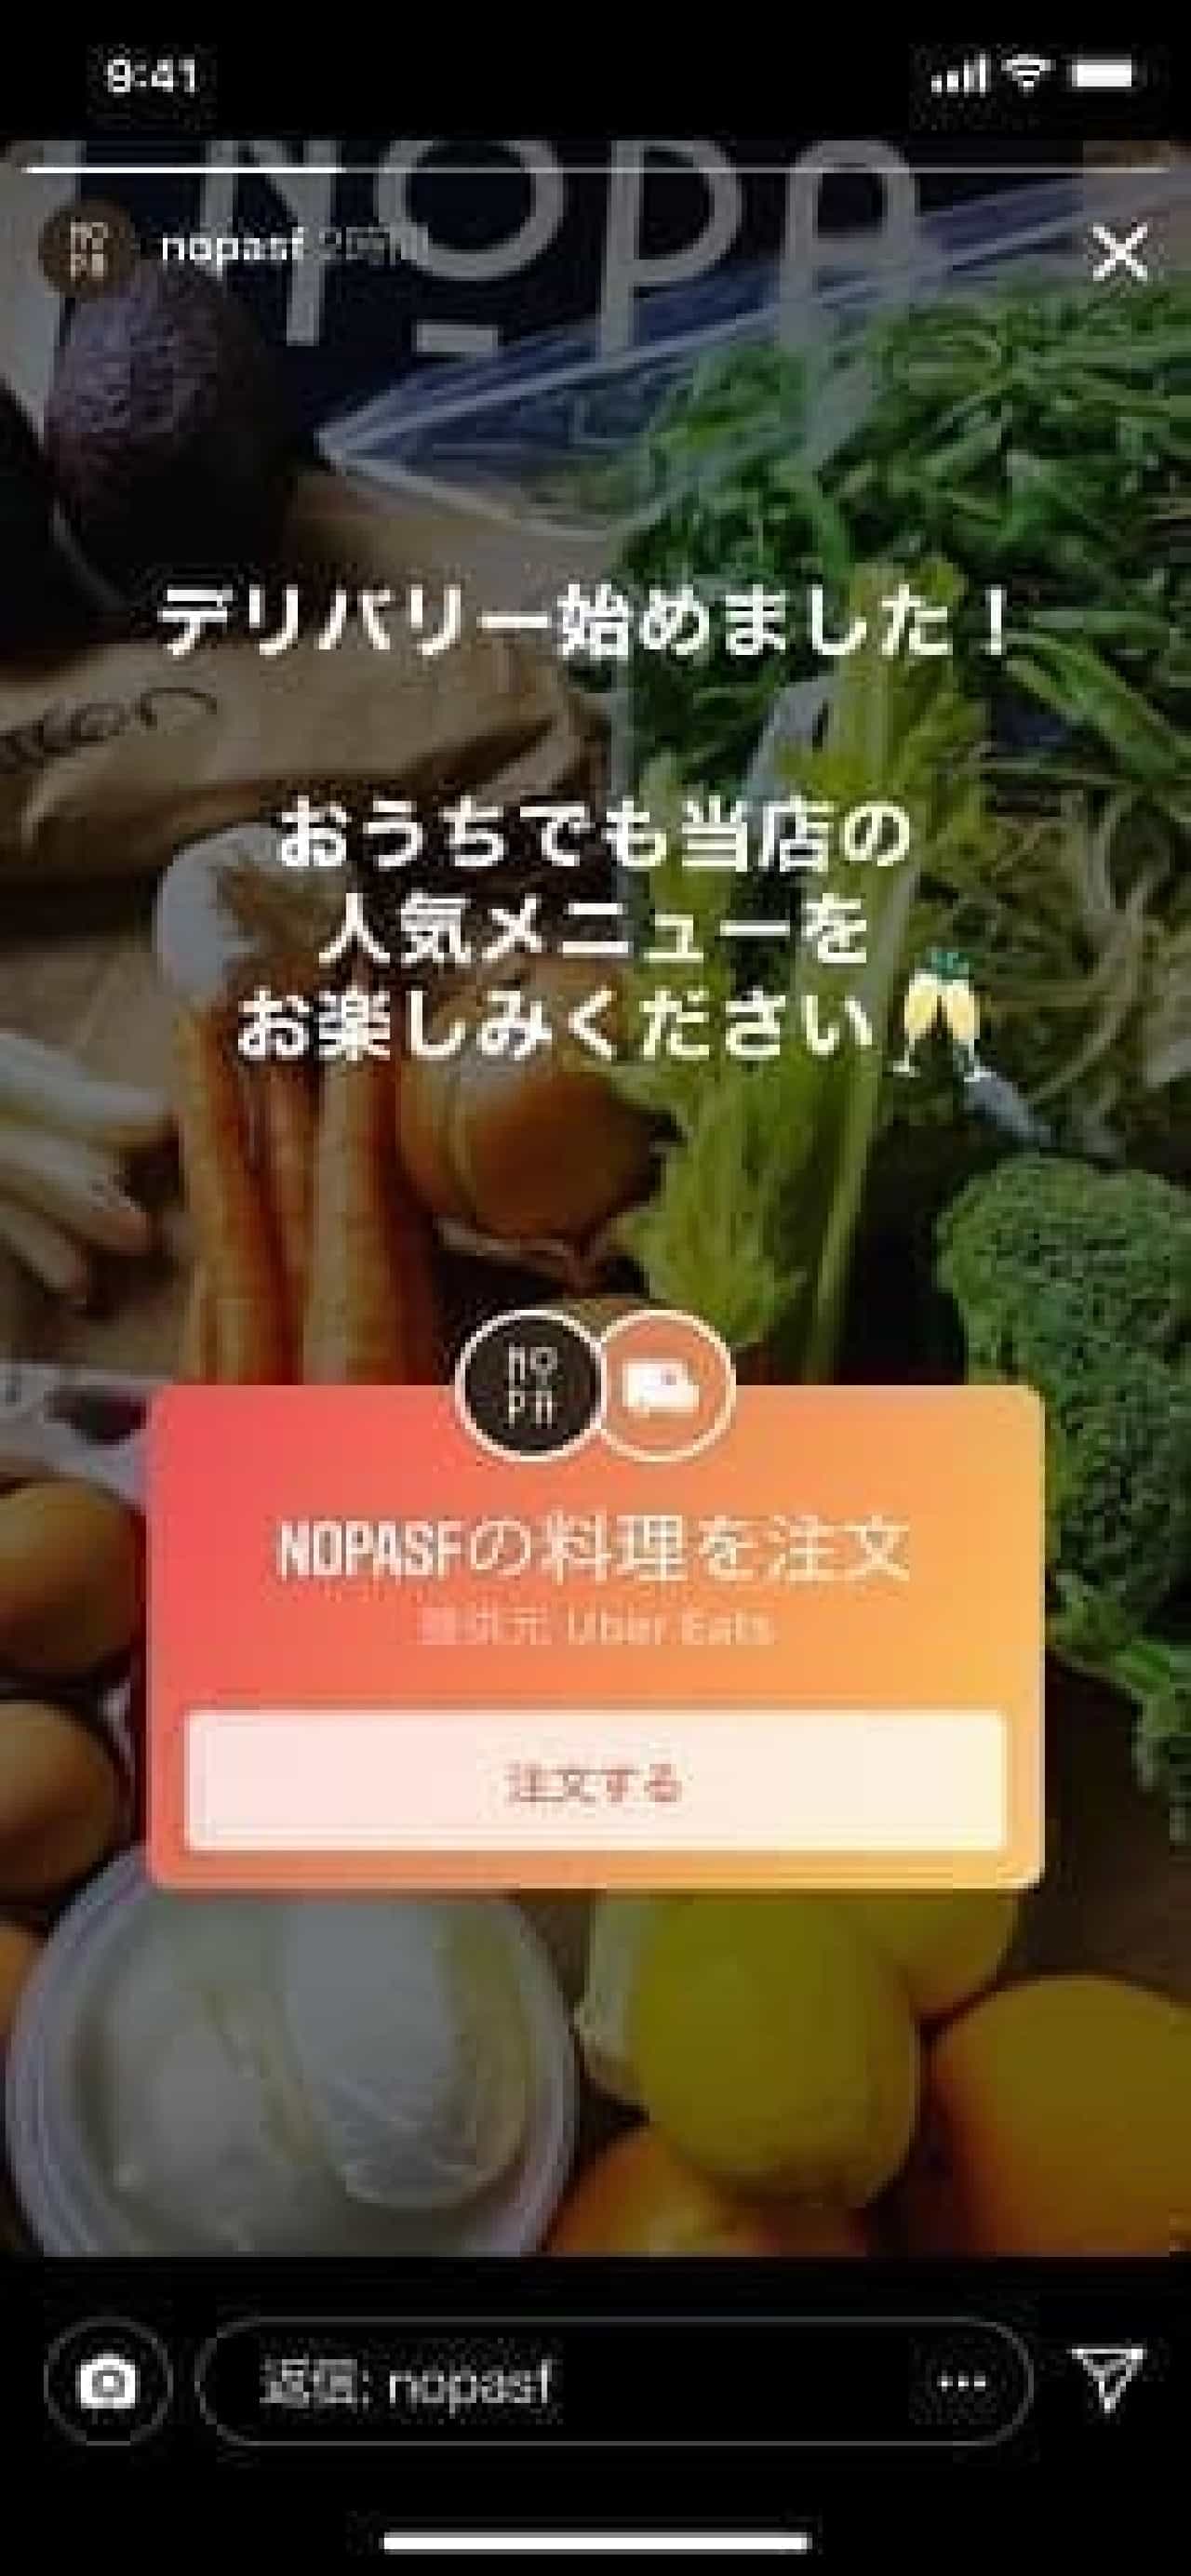 Instagram "Order Food" Stamp